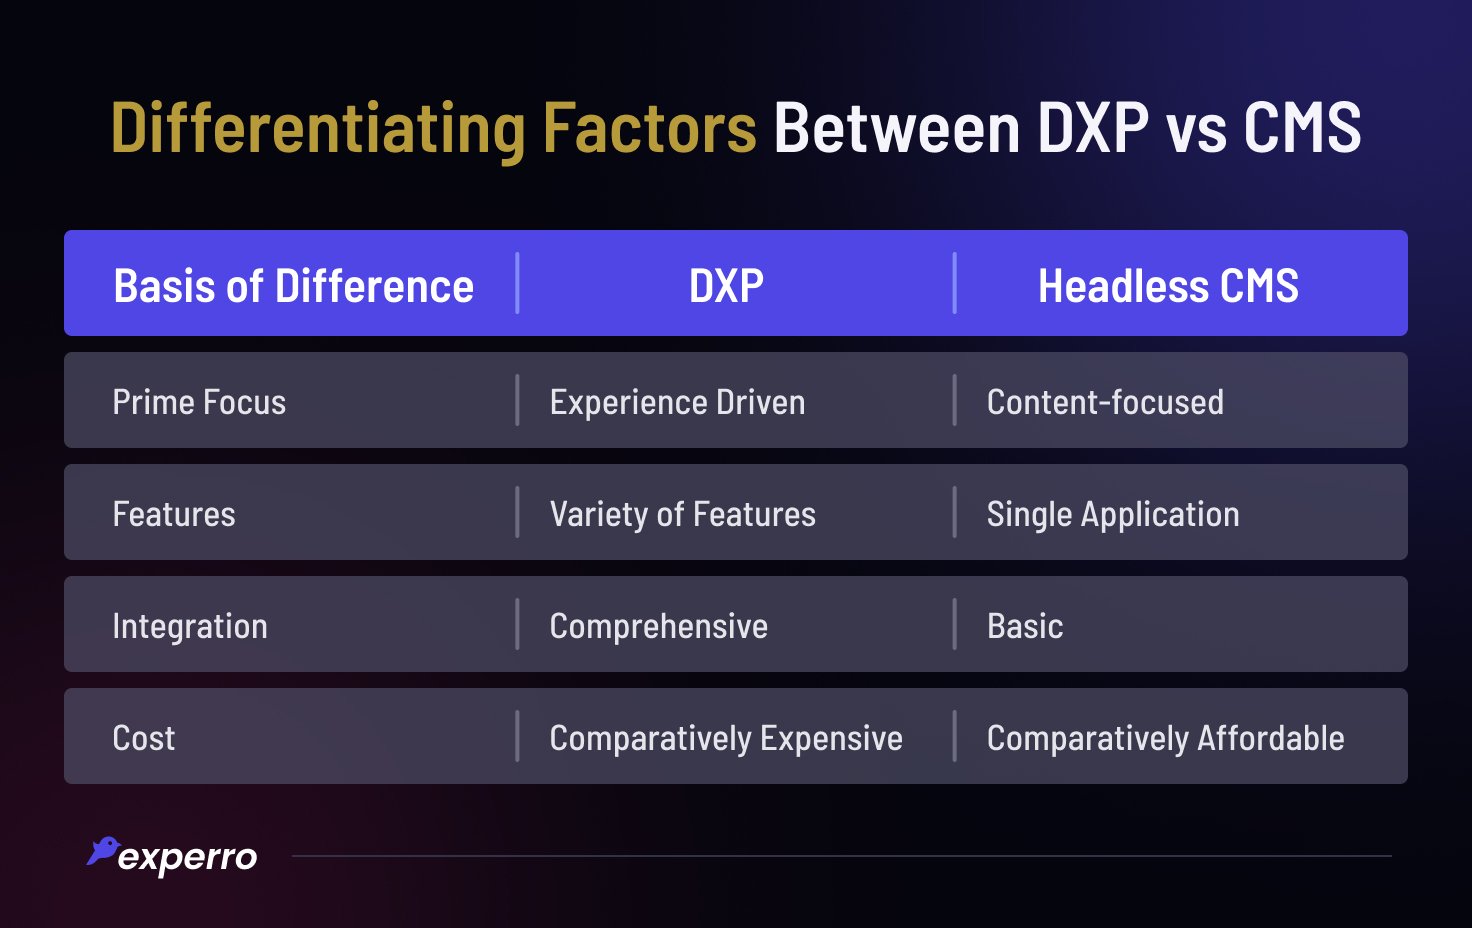 DXP vs CMS Differentiation